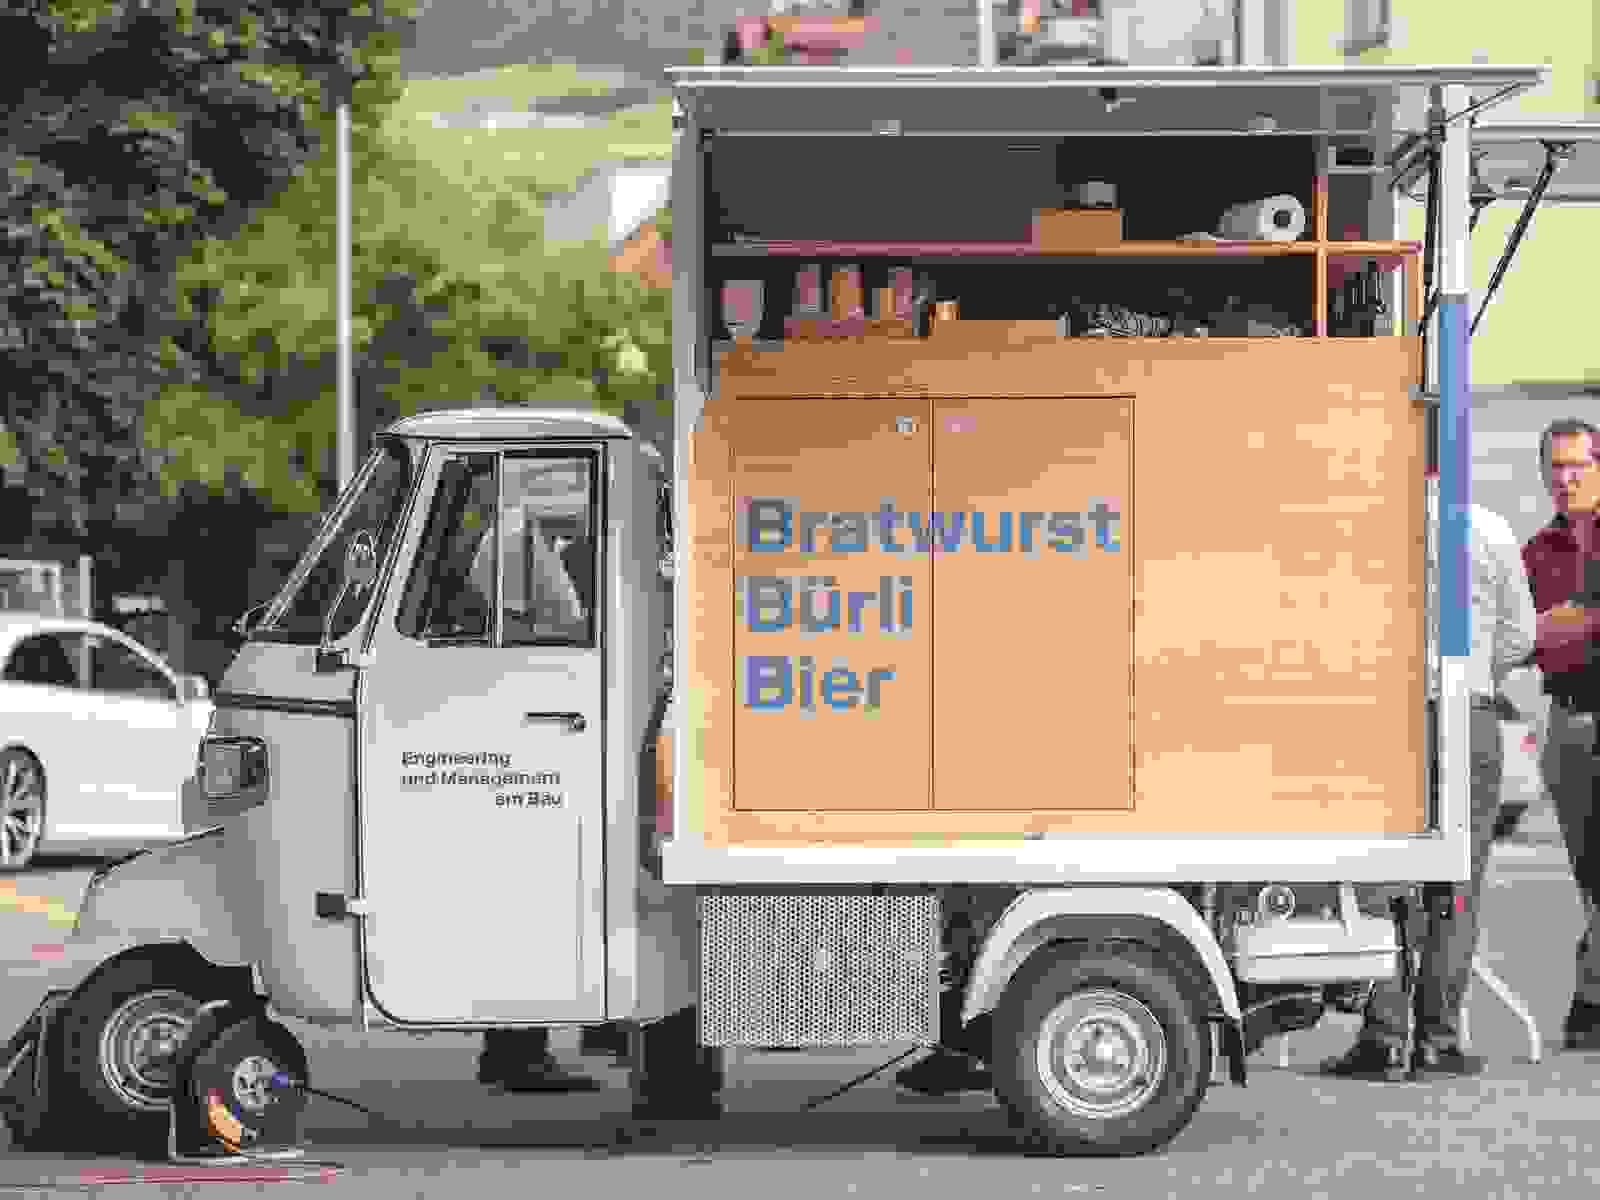 B3-Mobil mit Bürli Bratwurst Bier